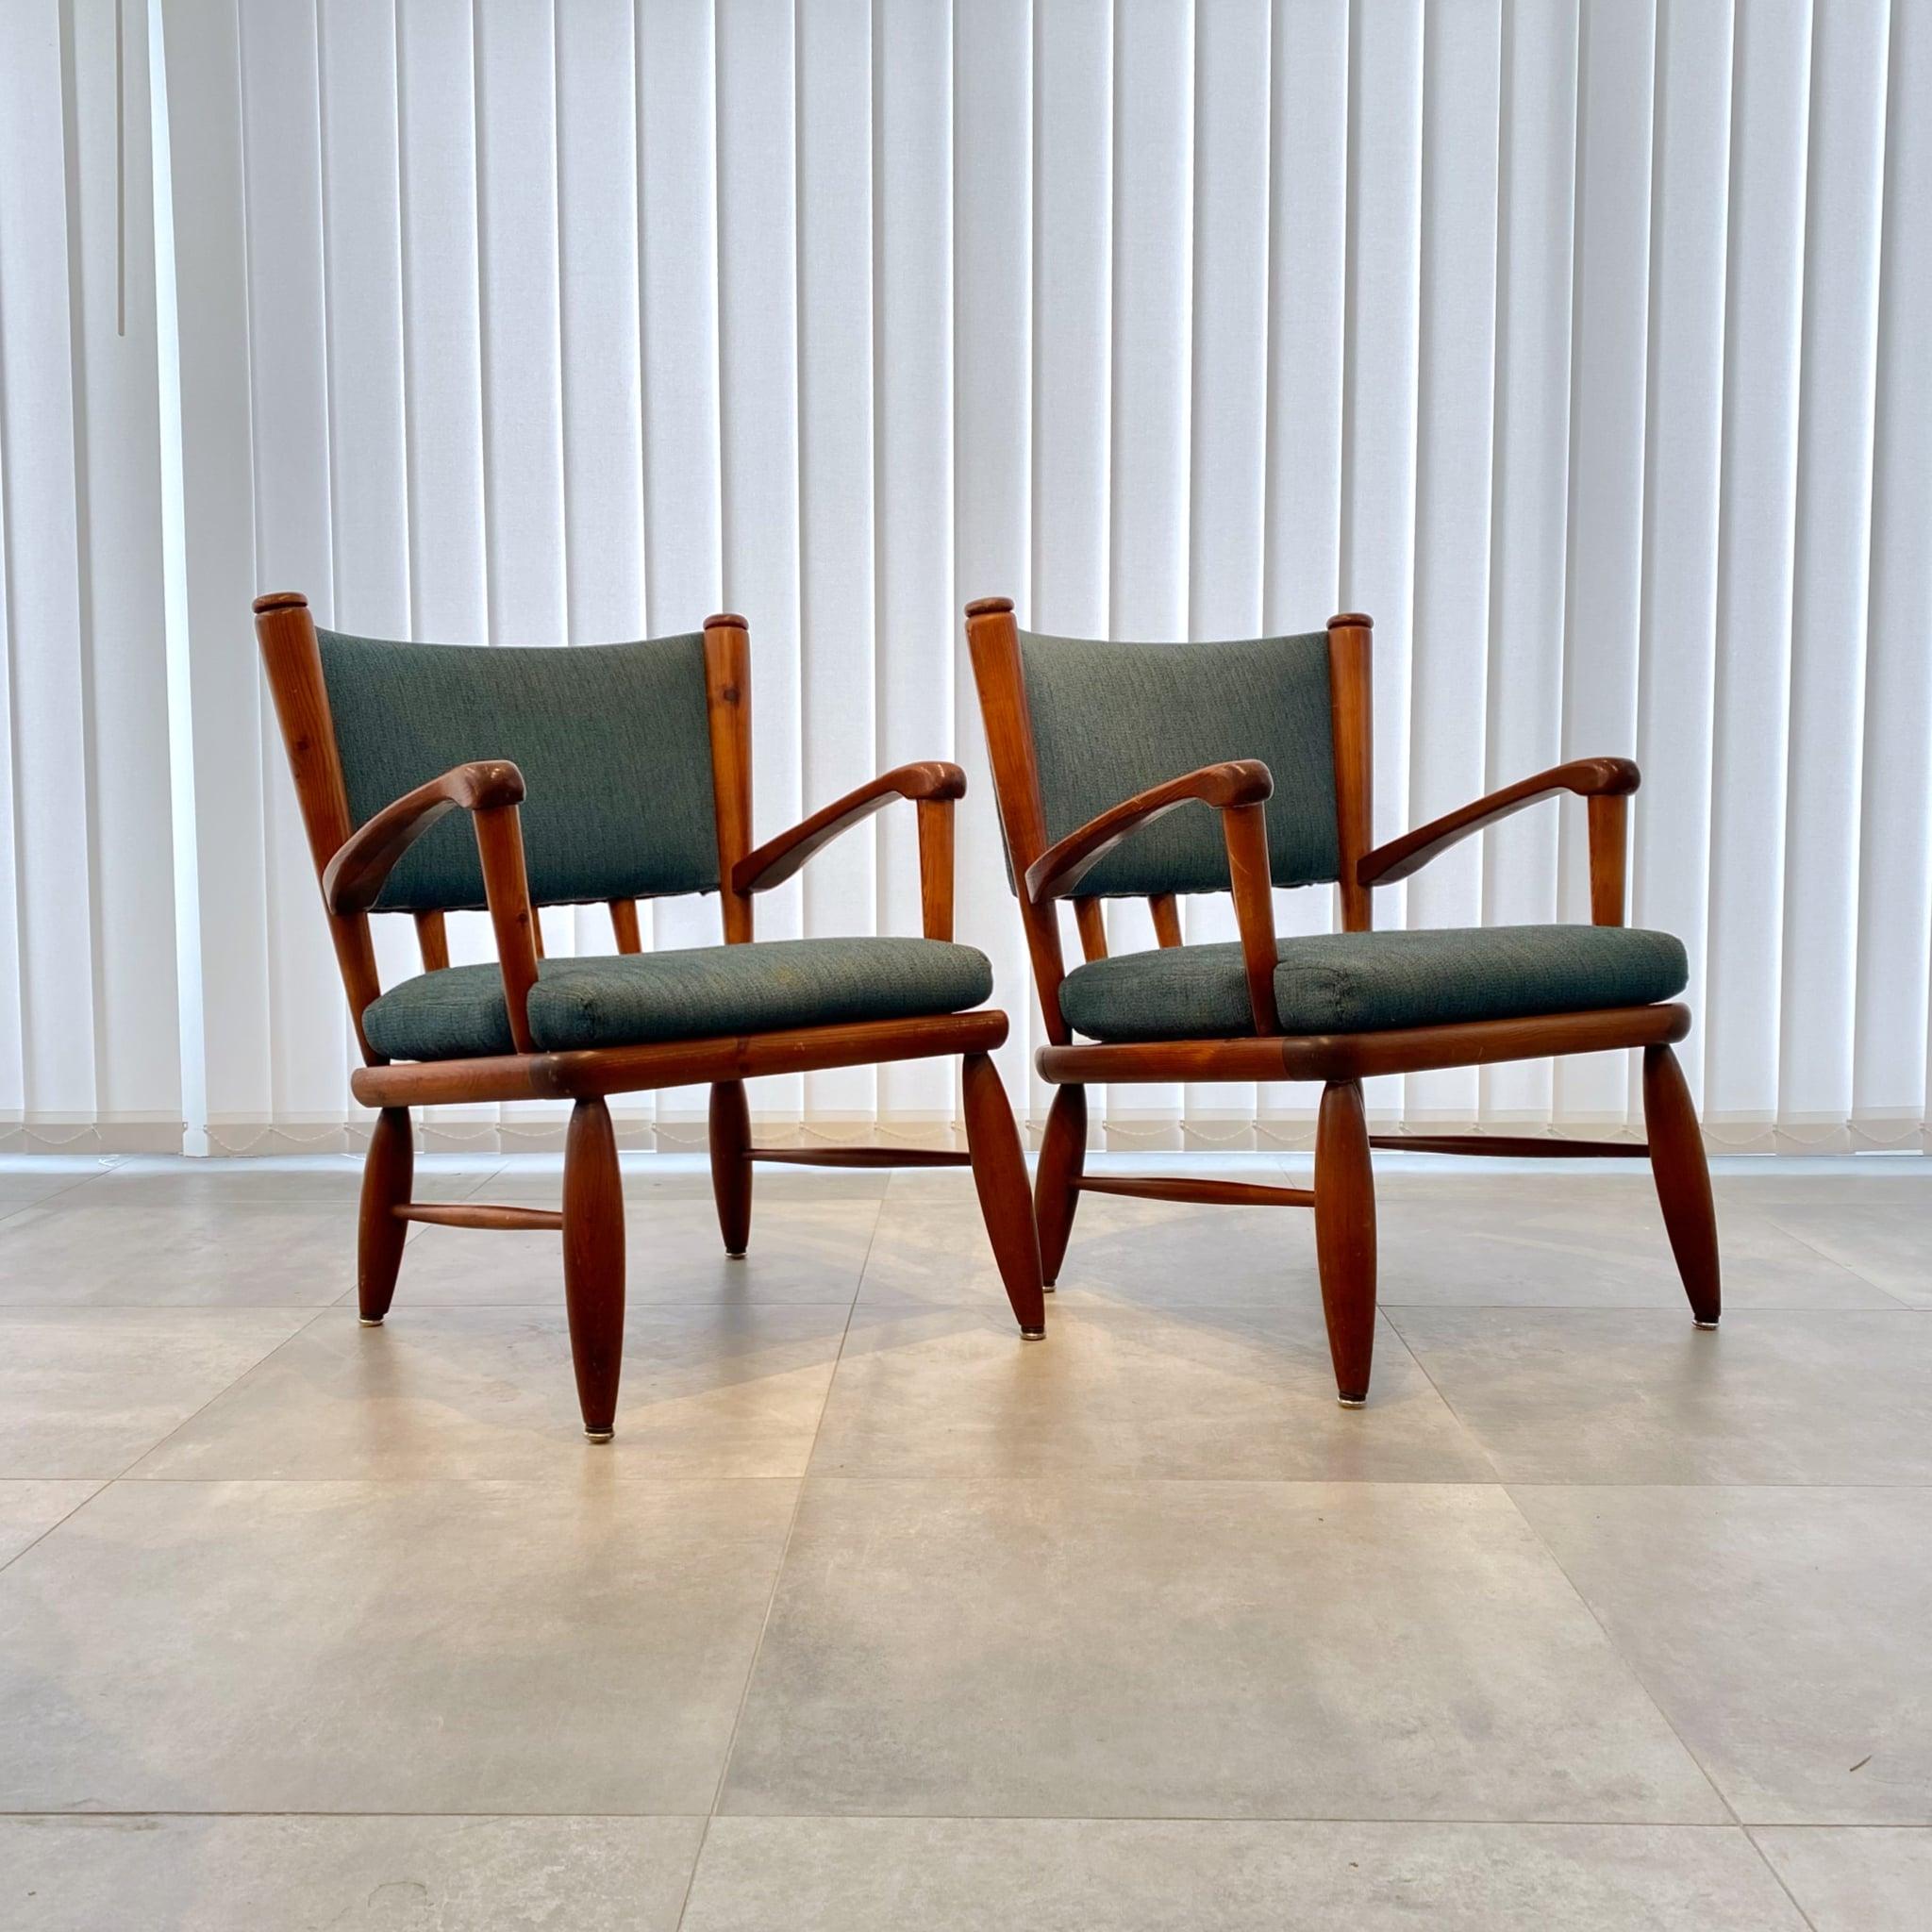 Ein Paar Säter-Sessel, entworfen von Gunnar Göpert im Jahr 1948 für den schwedischen Hersteller Göperts Industri, Jönköping. Hergestellt aus massivem Kiefernholz mit original blauem Stoff. Das Modell wurde als Neuheit in einer ganzseitigen Anzeige